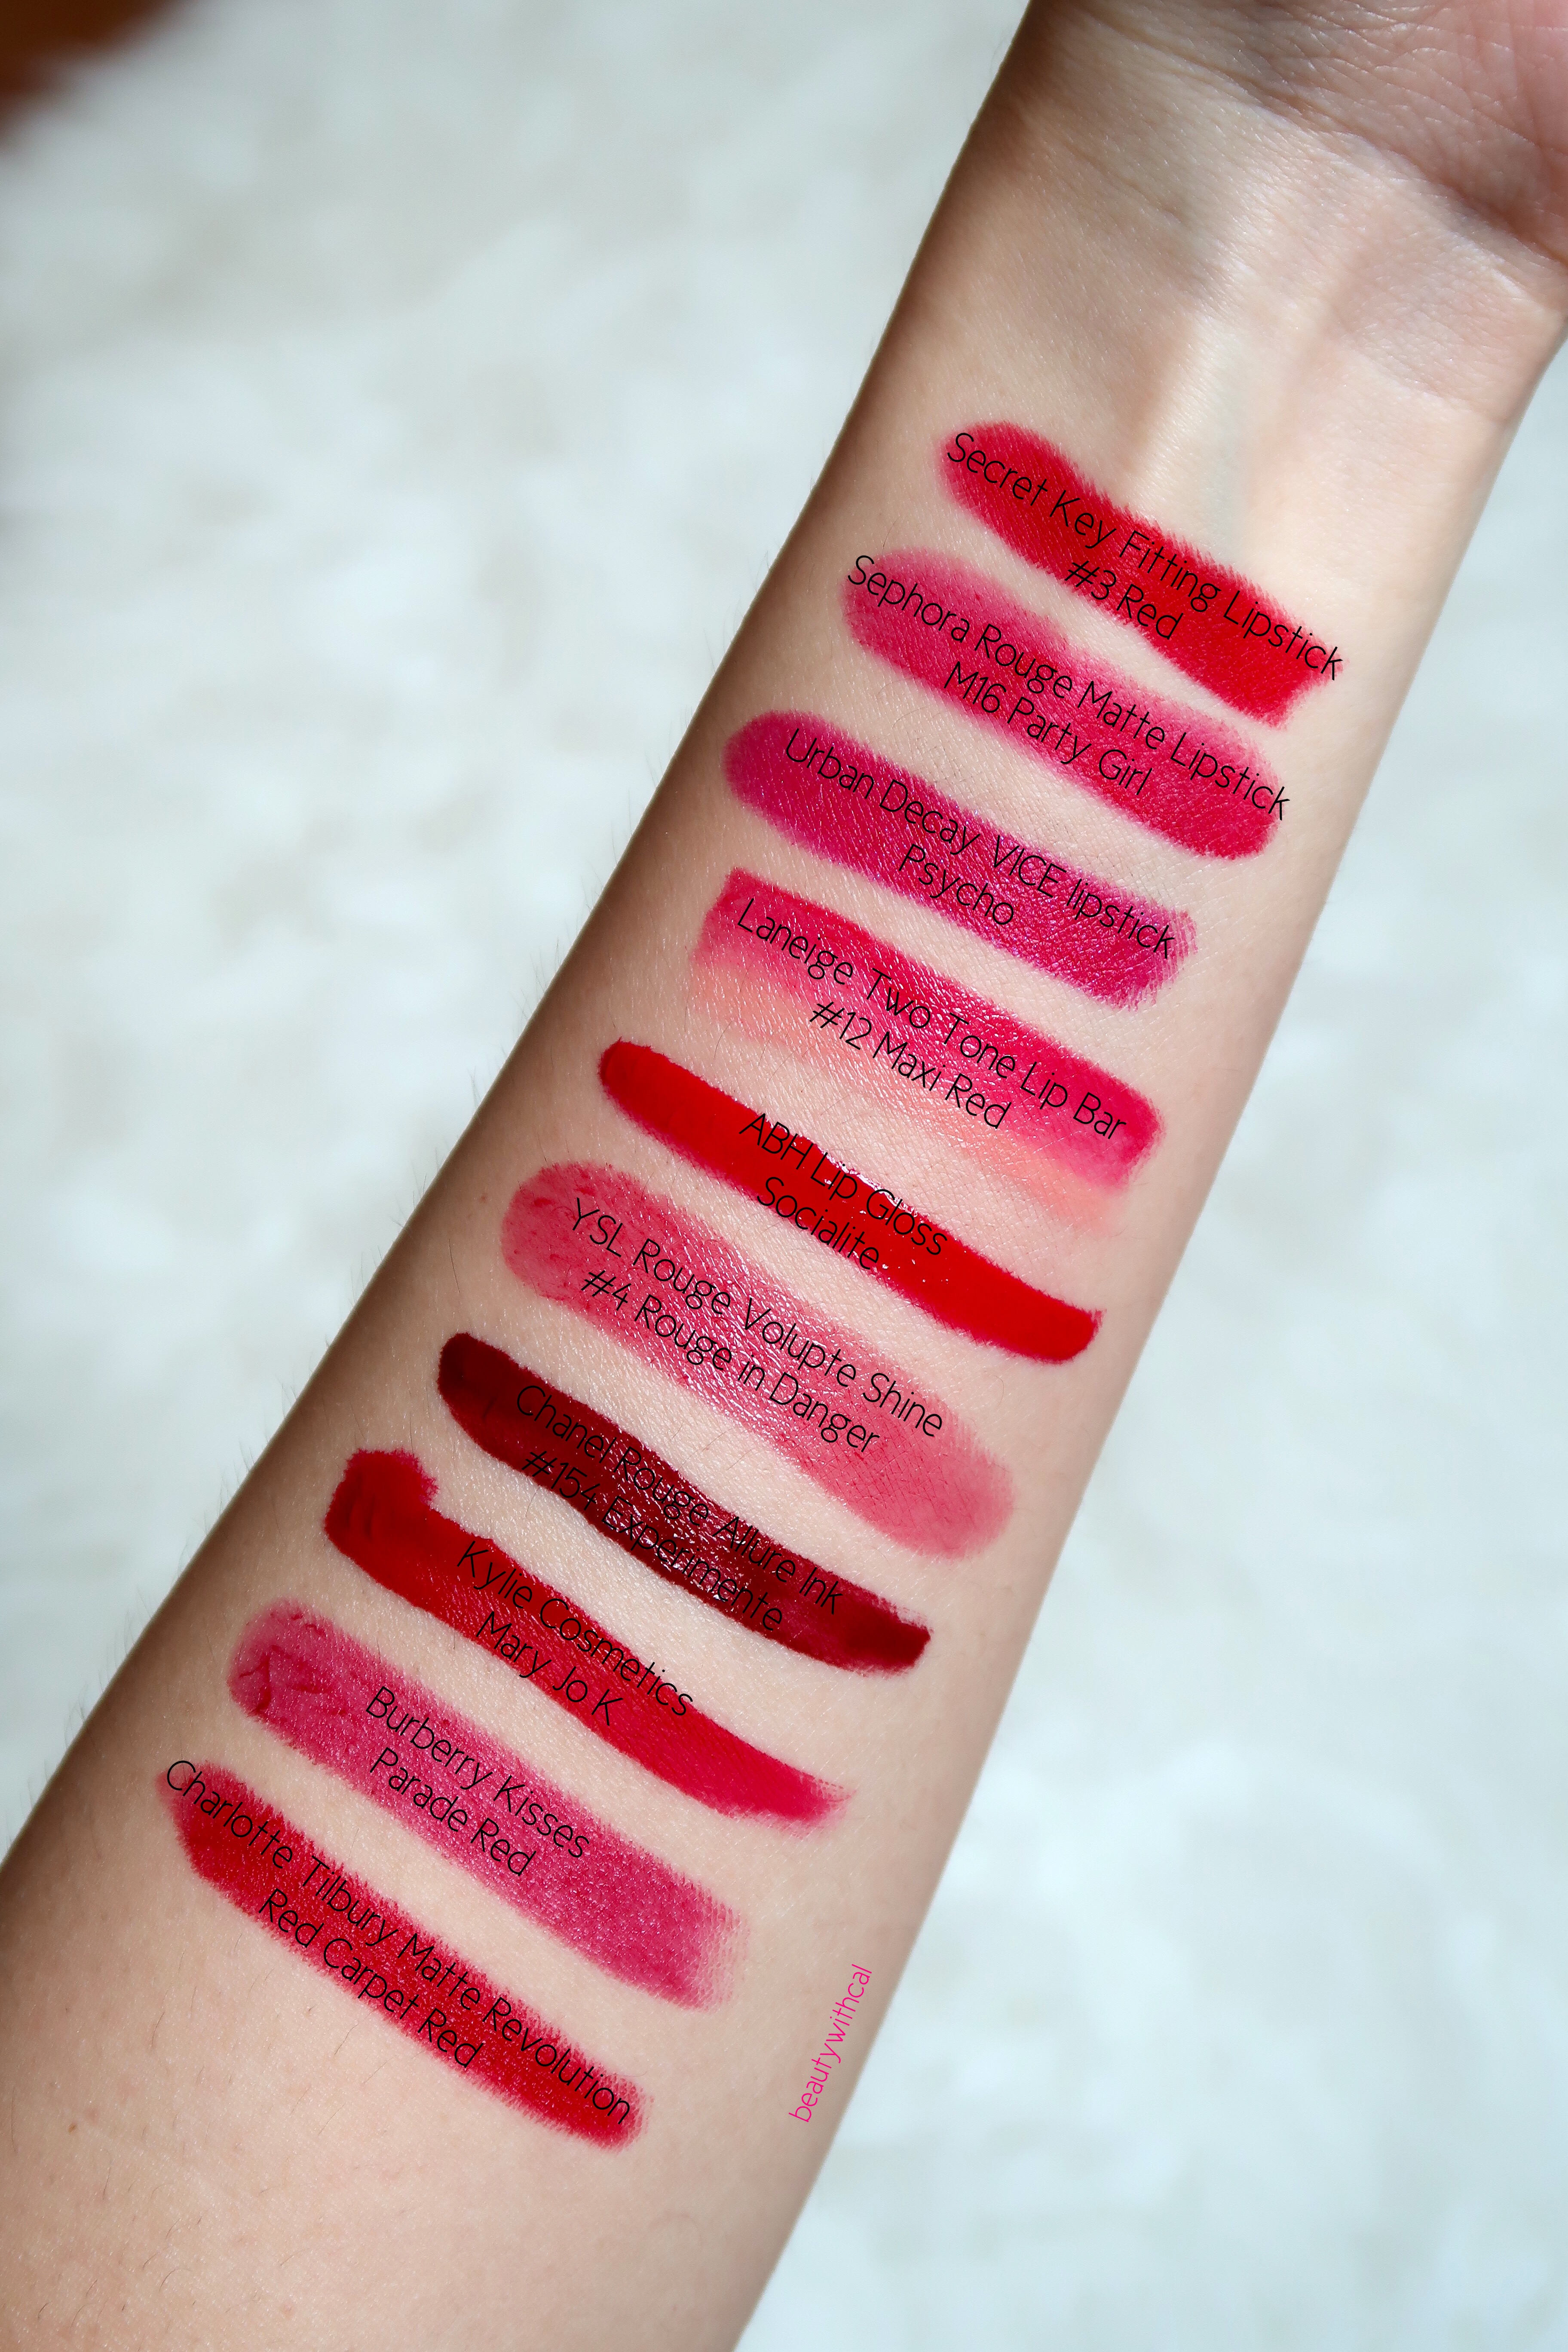 burberry parade red lipstick